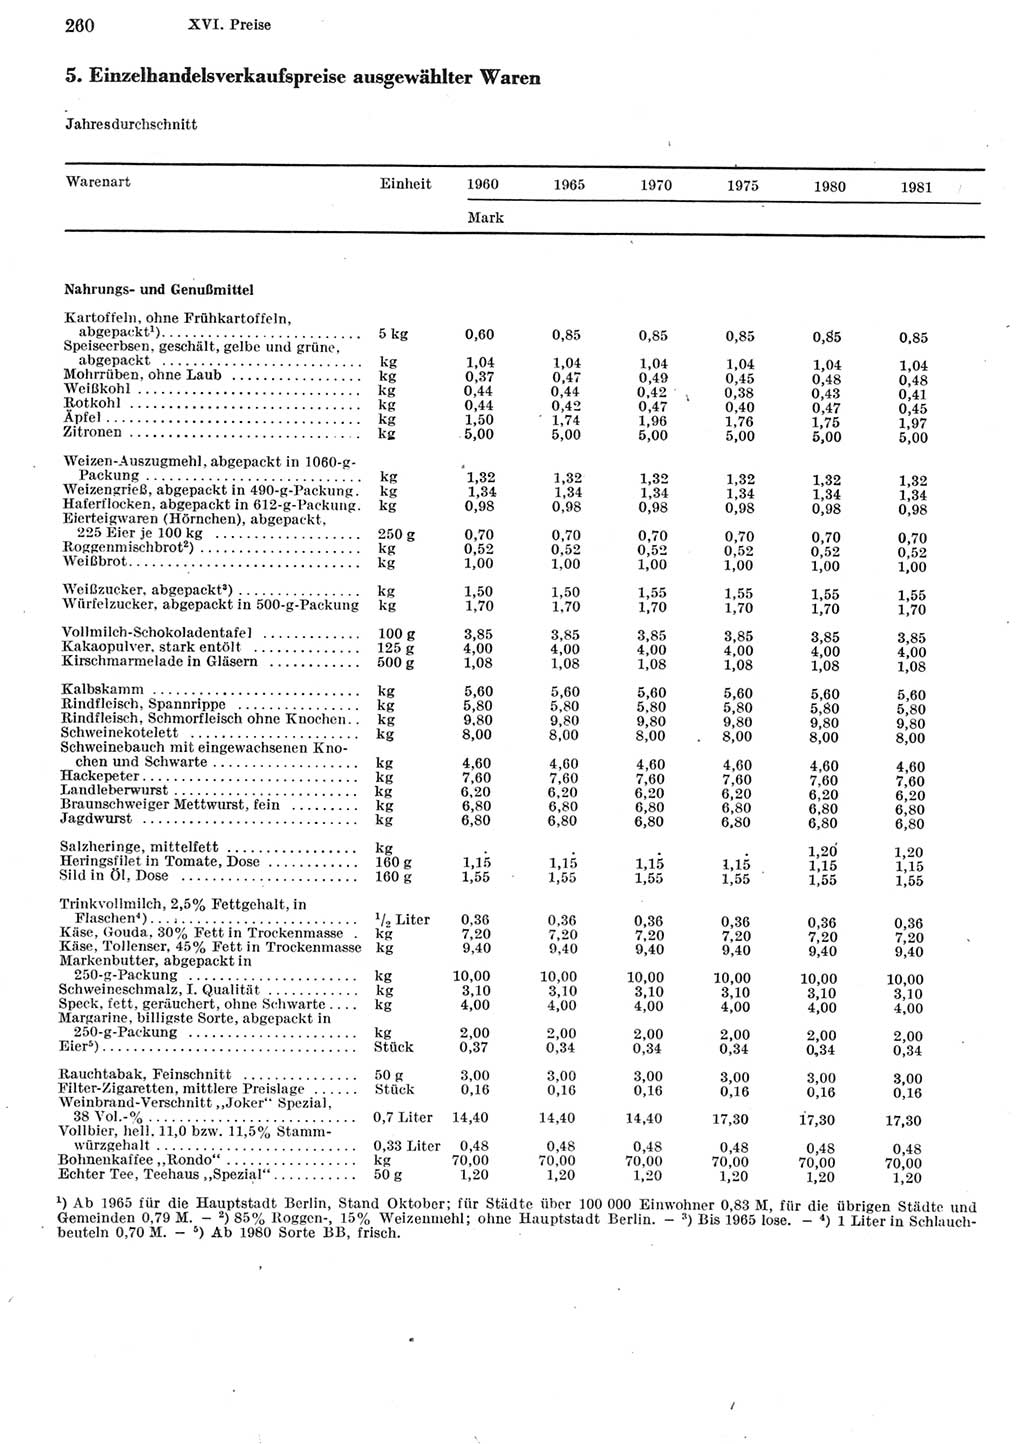 Statistisches Jahrbuch der Deutschen Demokratischen Republik (DDR) 1982, Seite 260 (Stat. Jb. DDR 1982, S. 260)